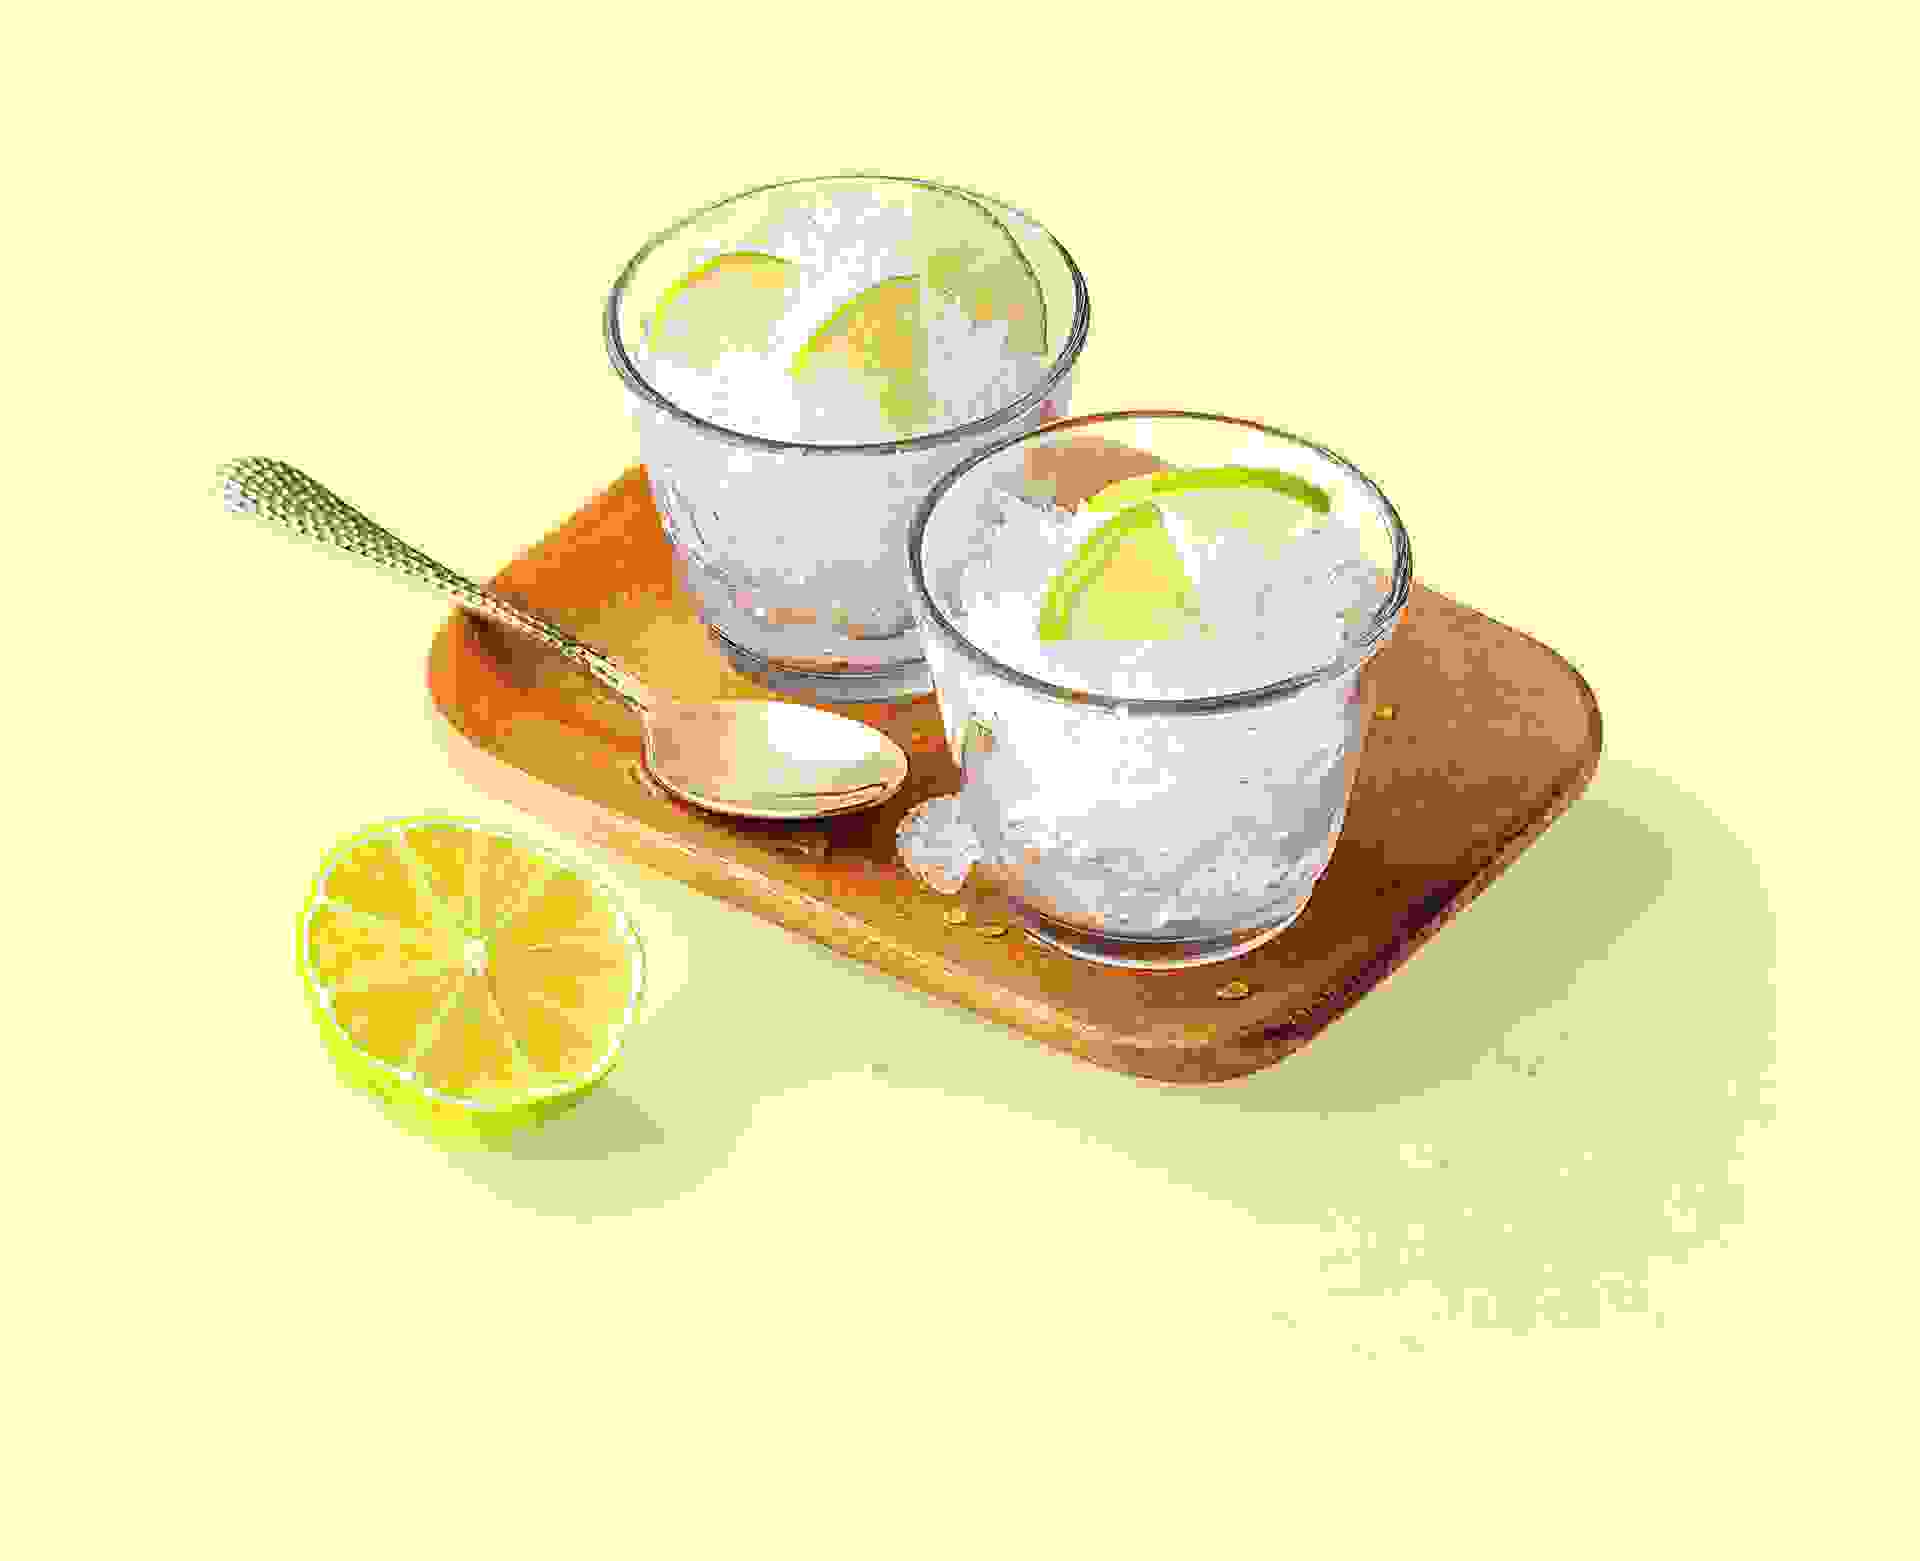 Cocktail Granité Citronné réalisé avec le sirop Citron vert, Citron Teisseire, servi dans un verre.